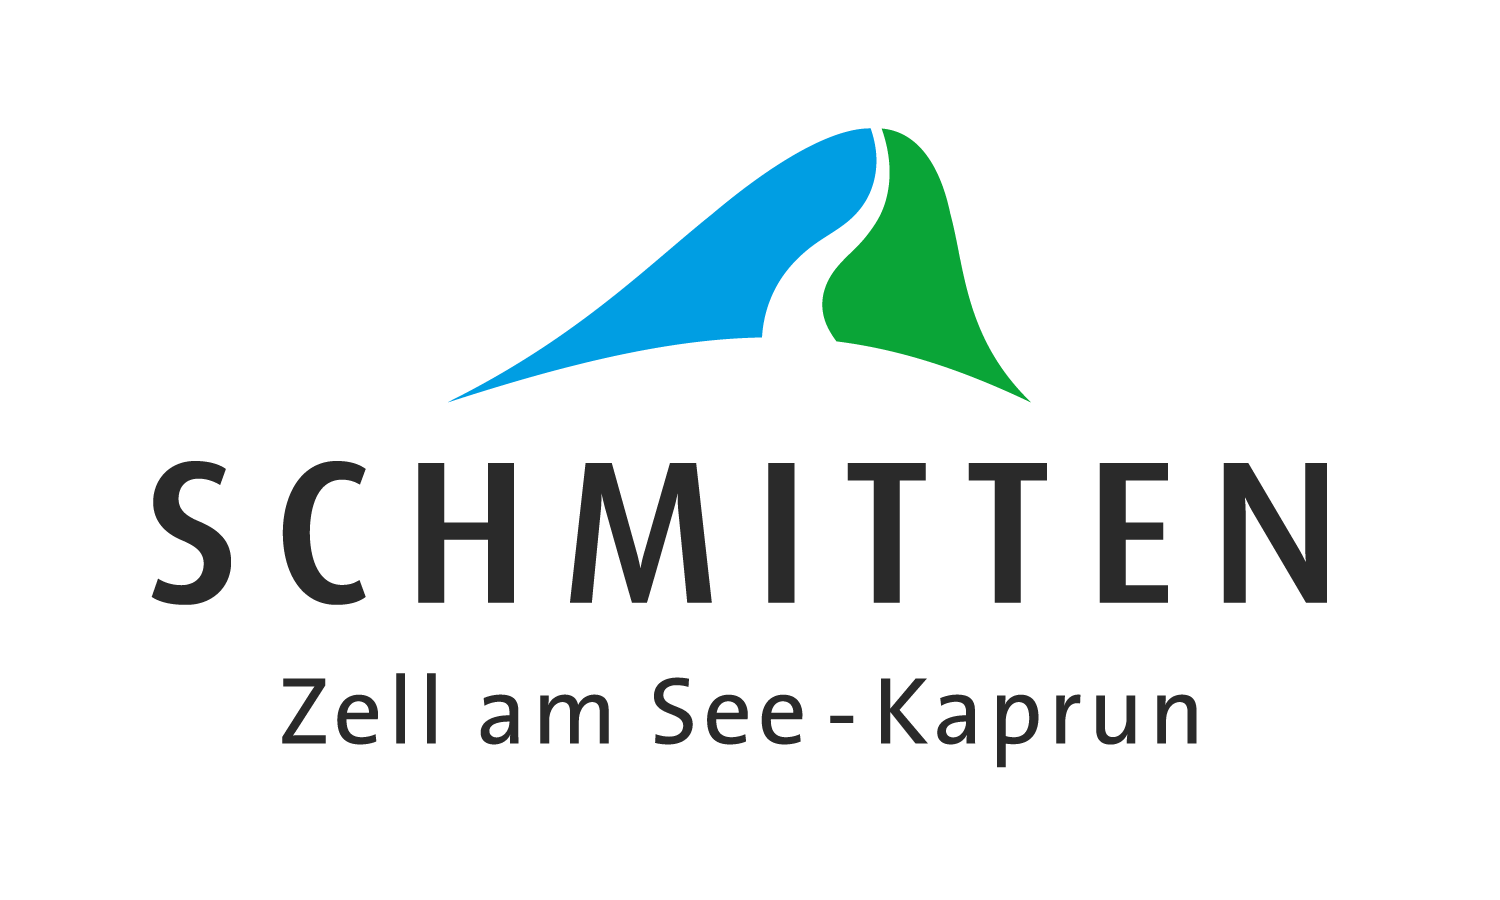 schmitten logo color